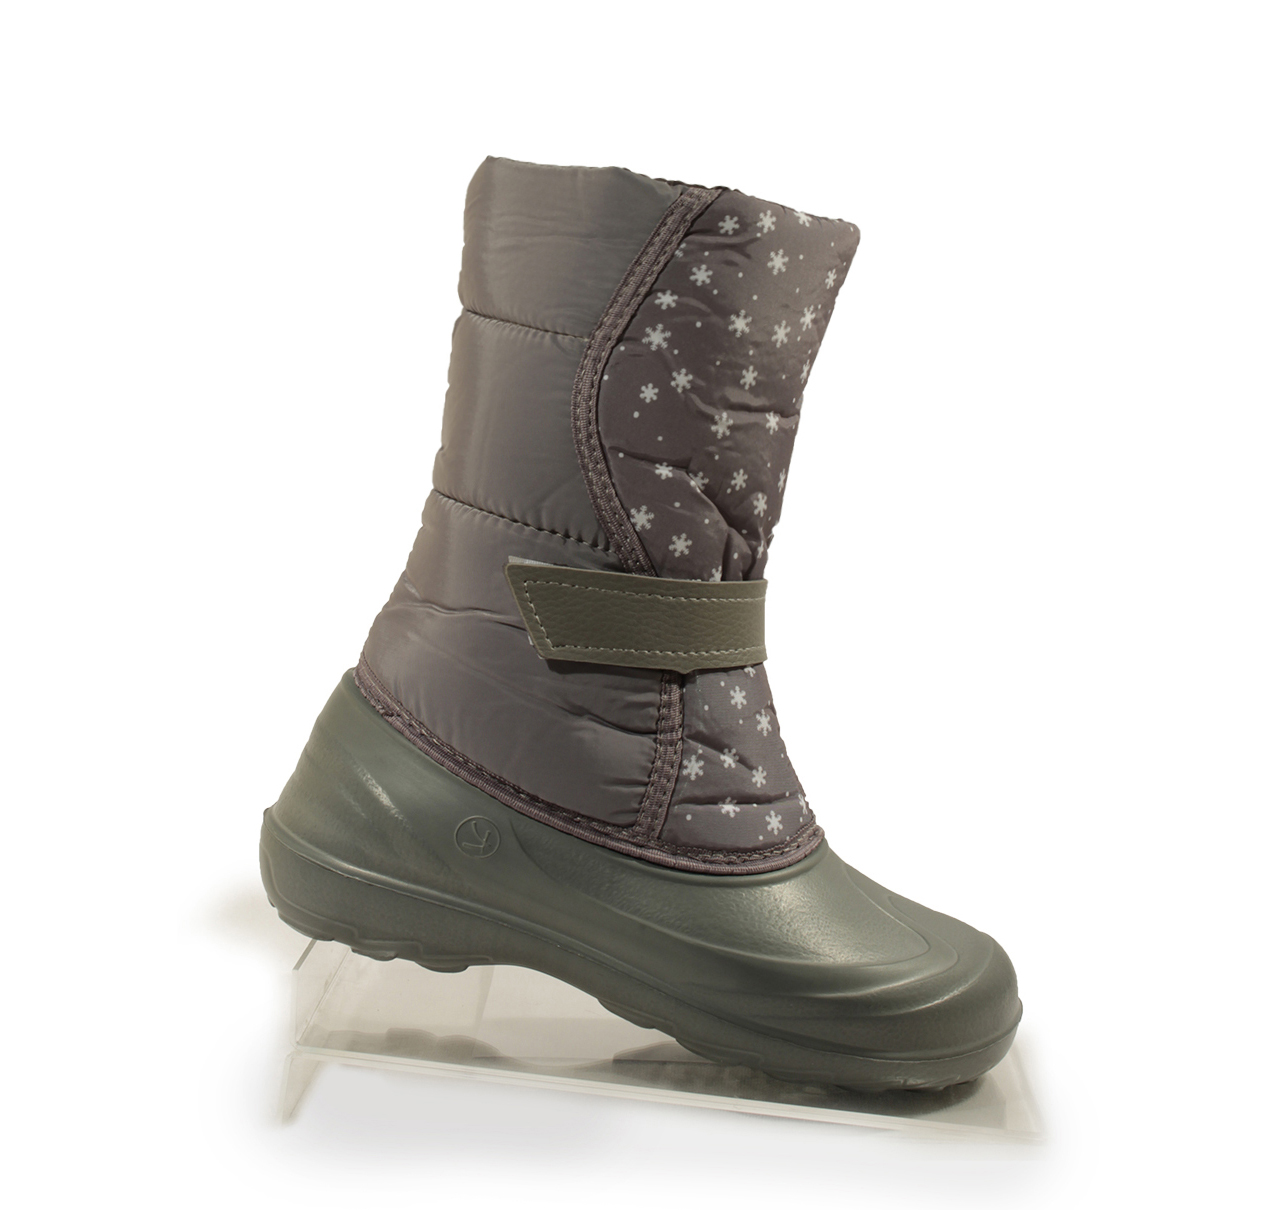 Women's boots “Snowboots” art.1326 – PP 